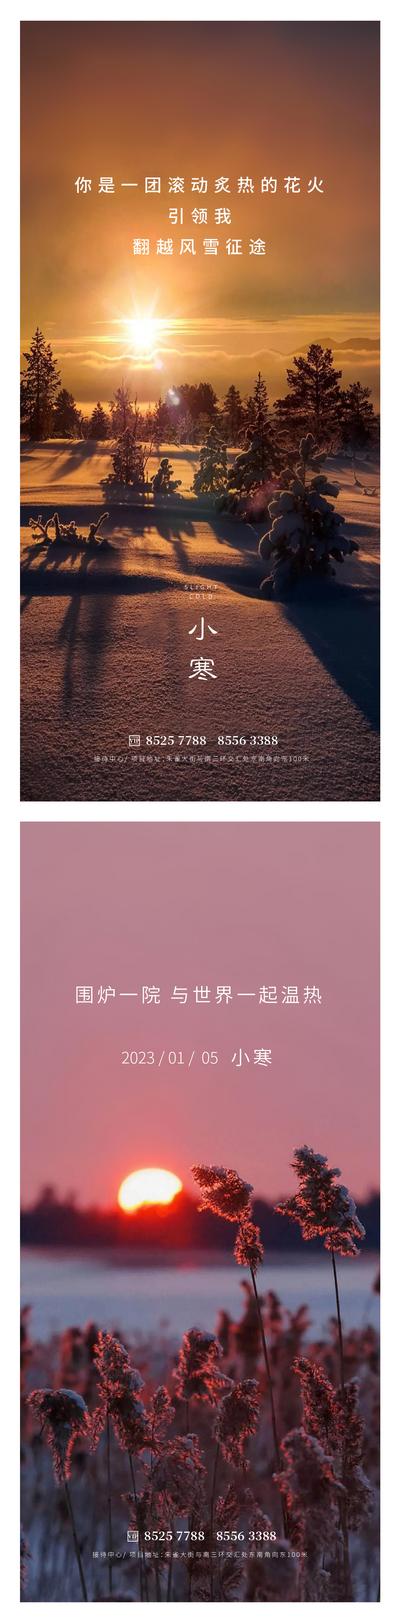 【南门网】广告 海报 地产 小寒 节气 落日 日出 阳光 暖色 雪 树木